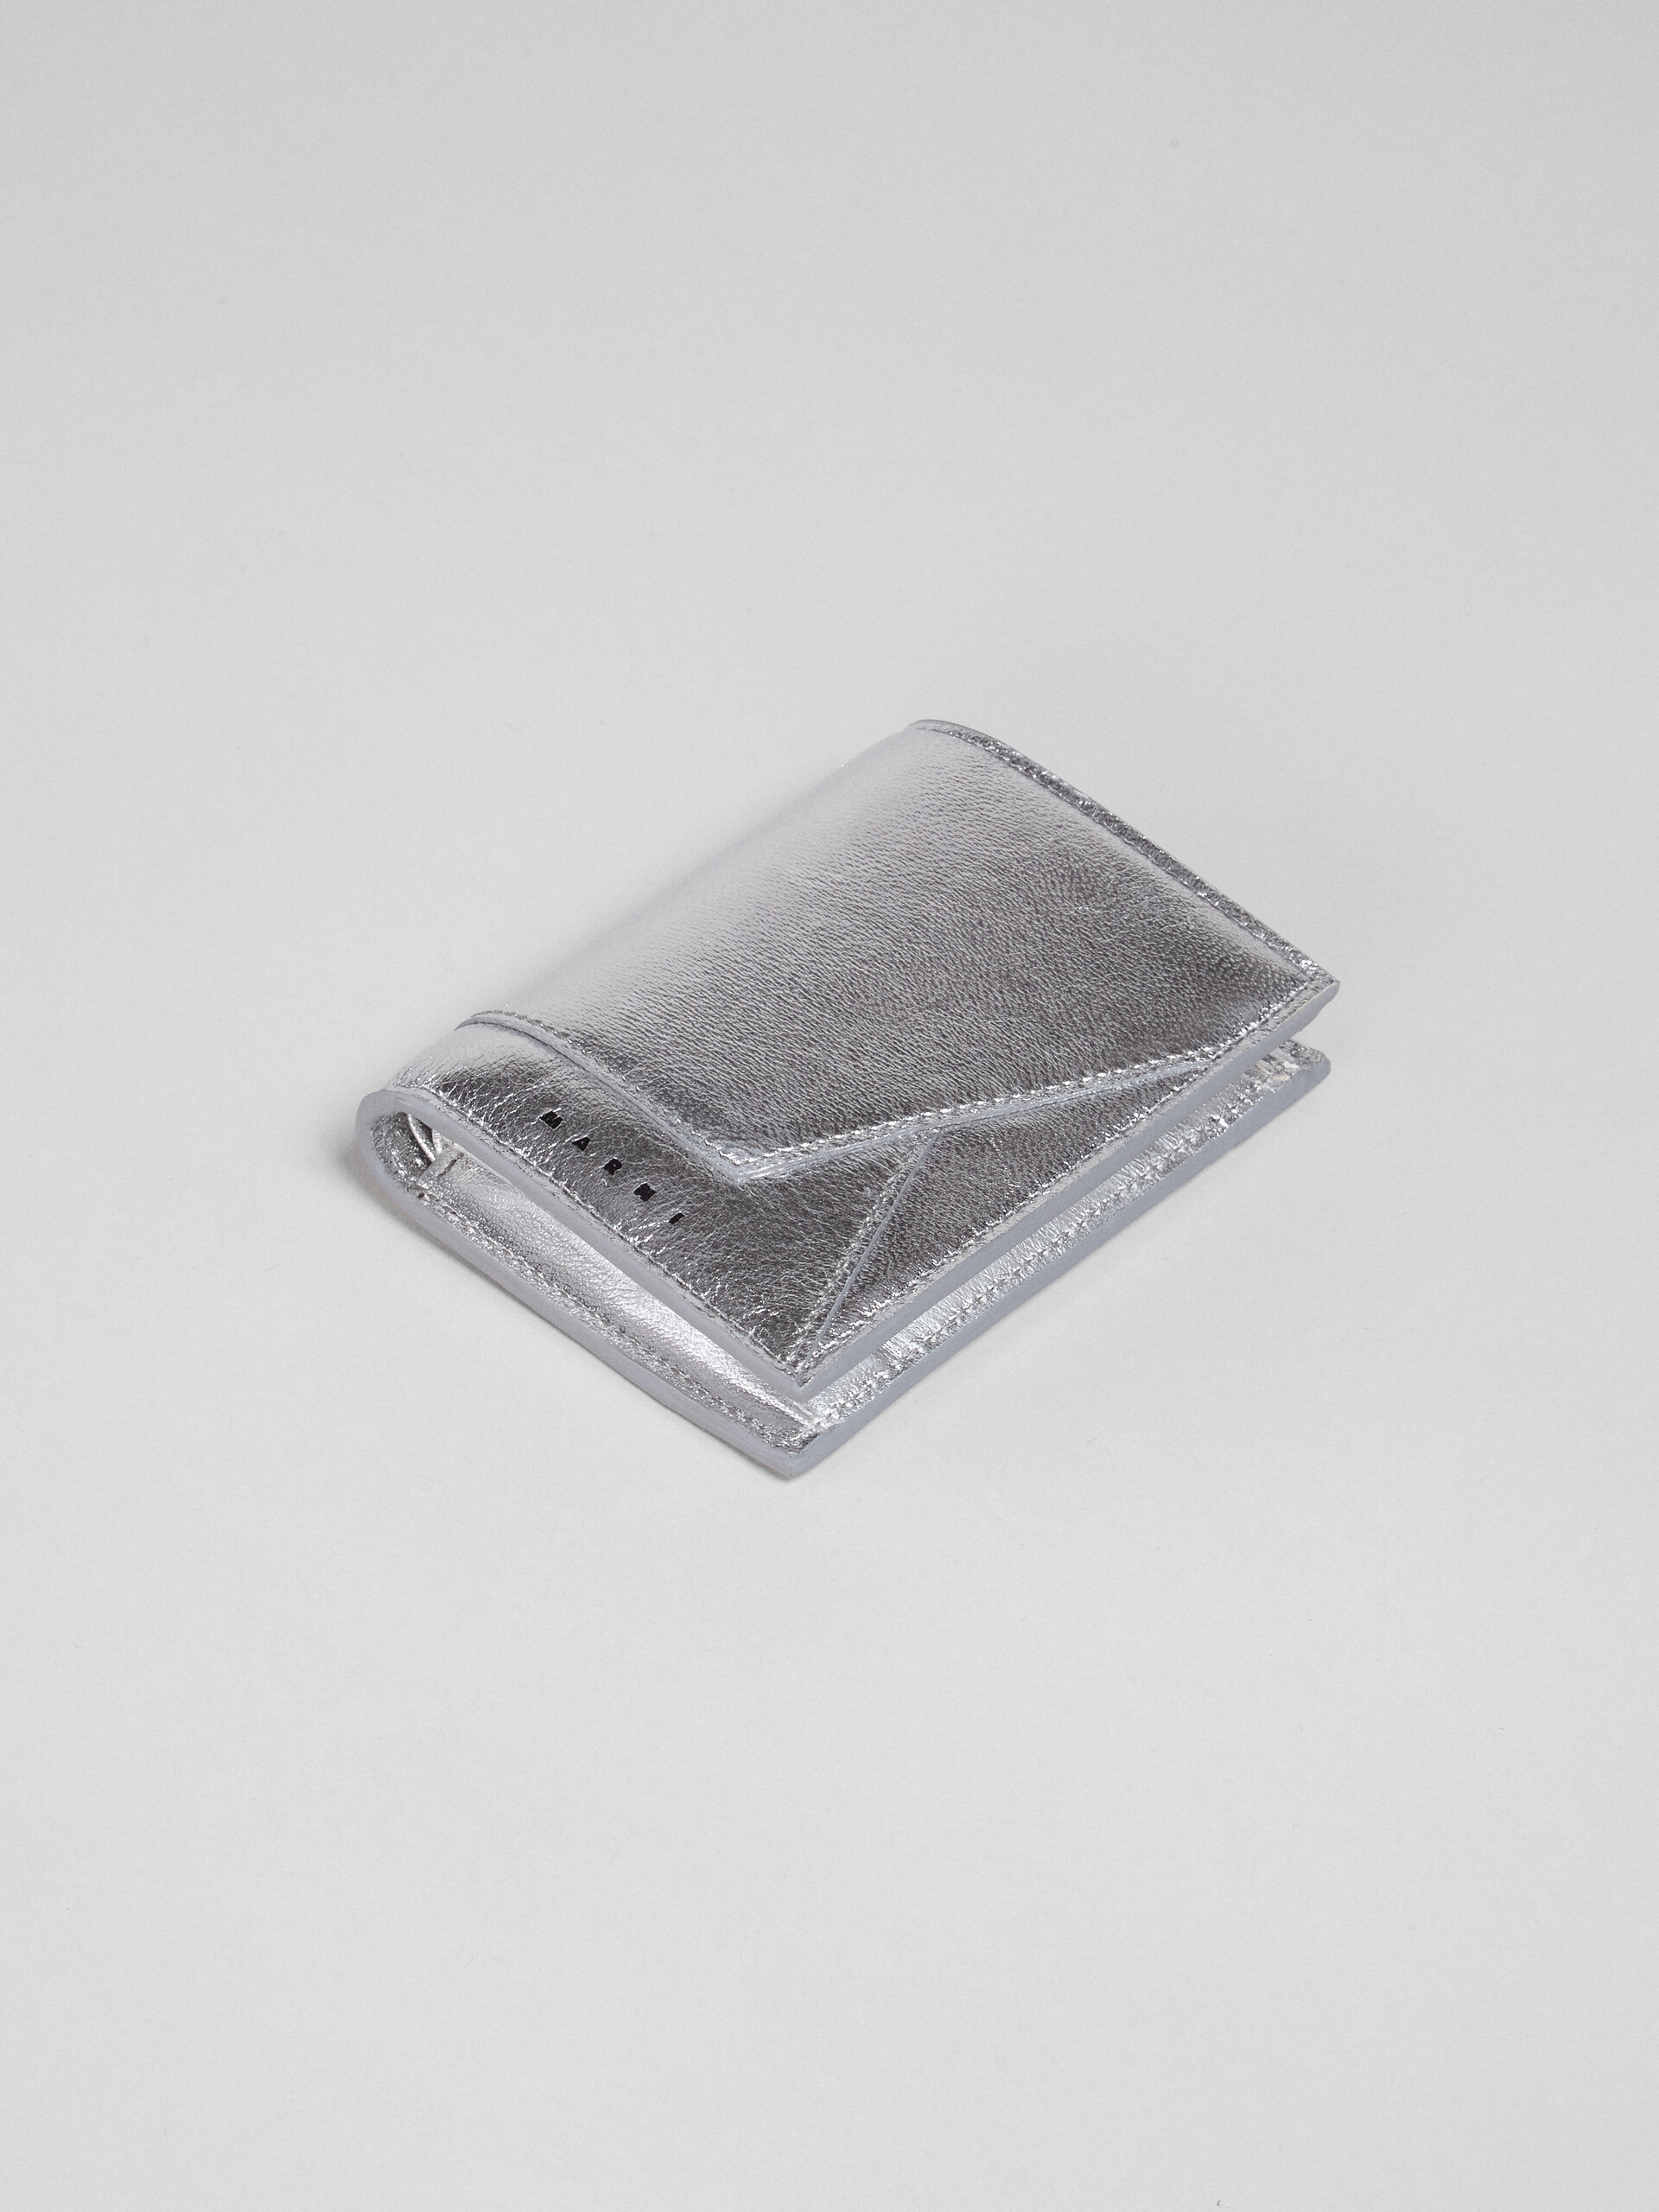 Portafoglio bi-fold in nappa metallizzata argento - Portafogli - Image 4